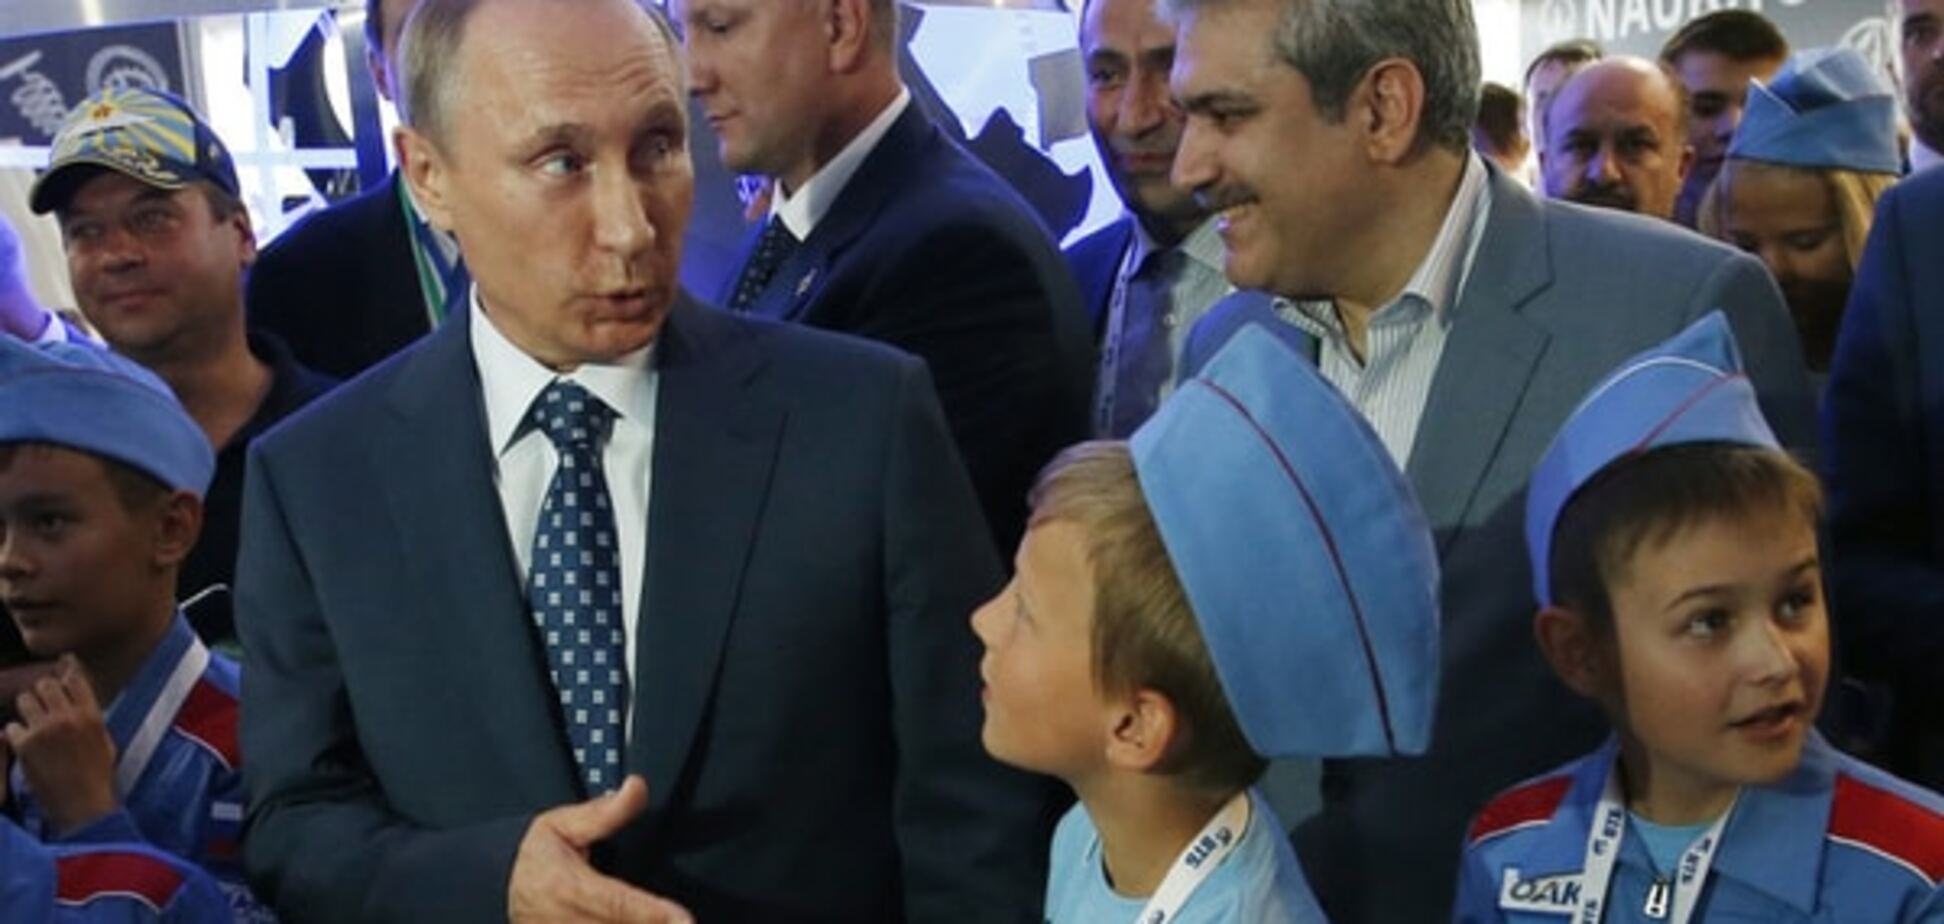 В'яне віра в царя: менше половини росіян зубожіли через Путіна - опитування